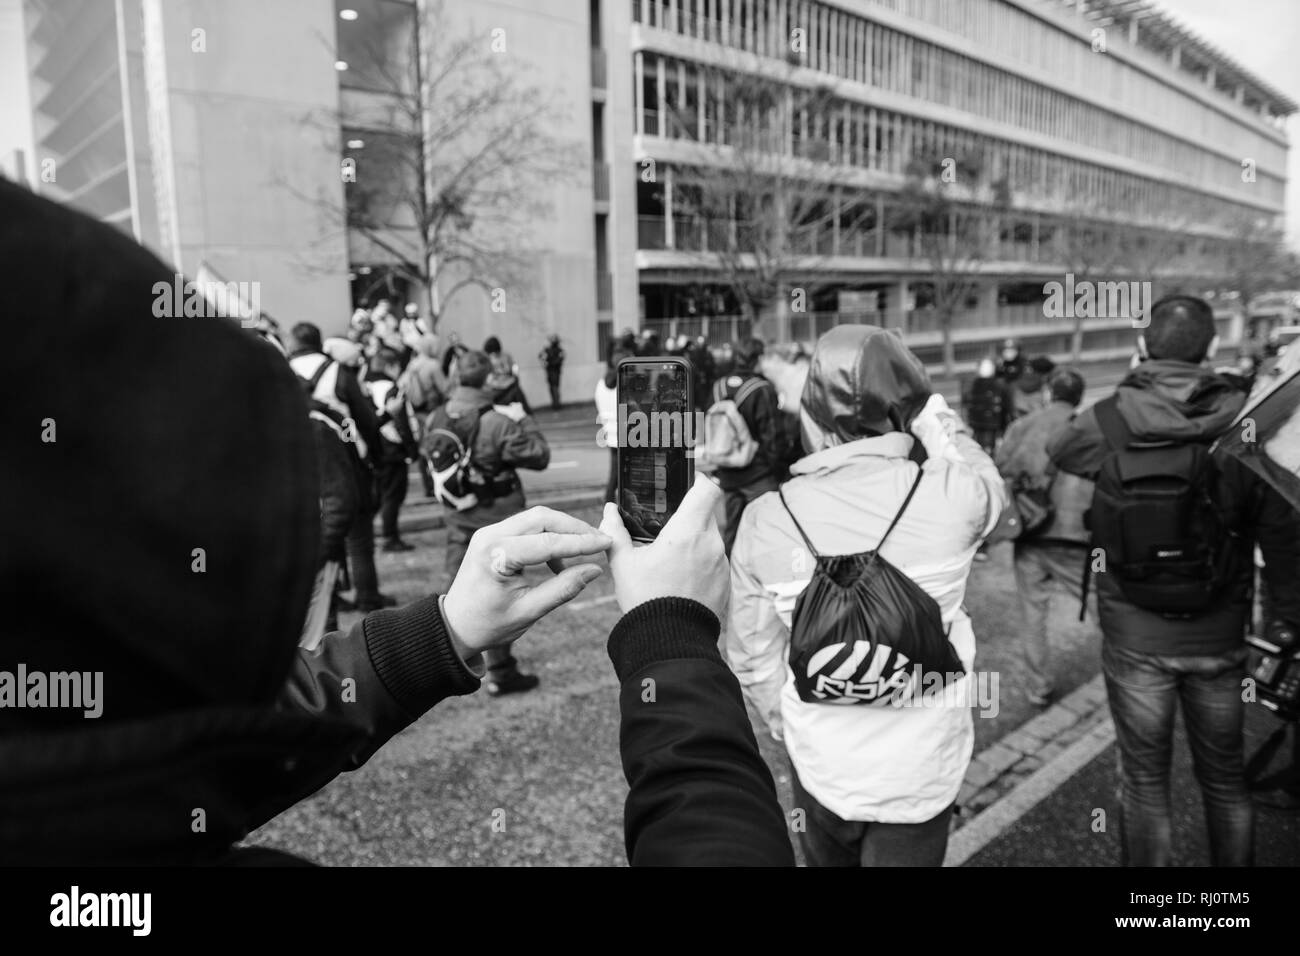 STRASBOURG, FRANCE - DEC 02, 2018 : l'homme avec masque en tenant avec des manifestants et les forces de police au cours de protestation de gilets jaunes Gilet jaune les manifestations anti-gouvernementales Banque D'Images